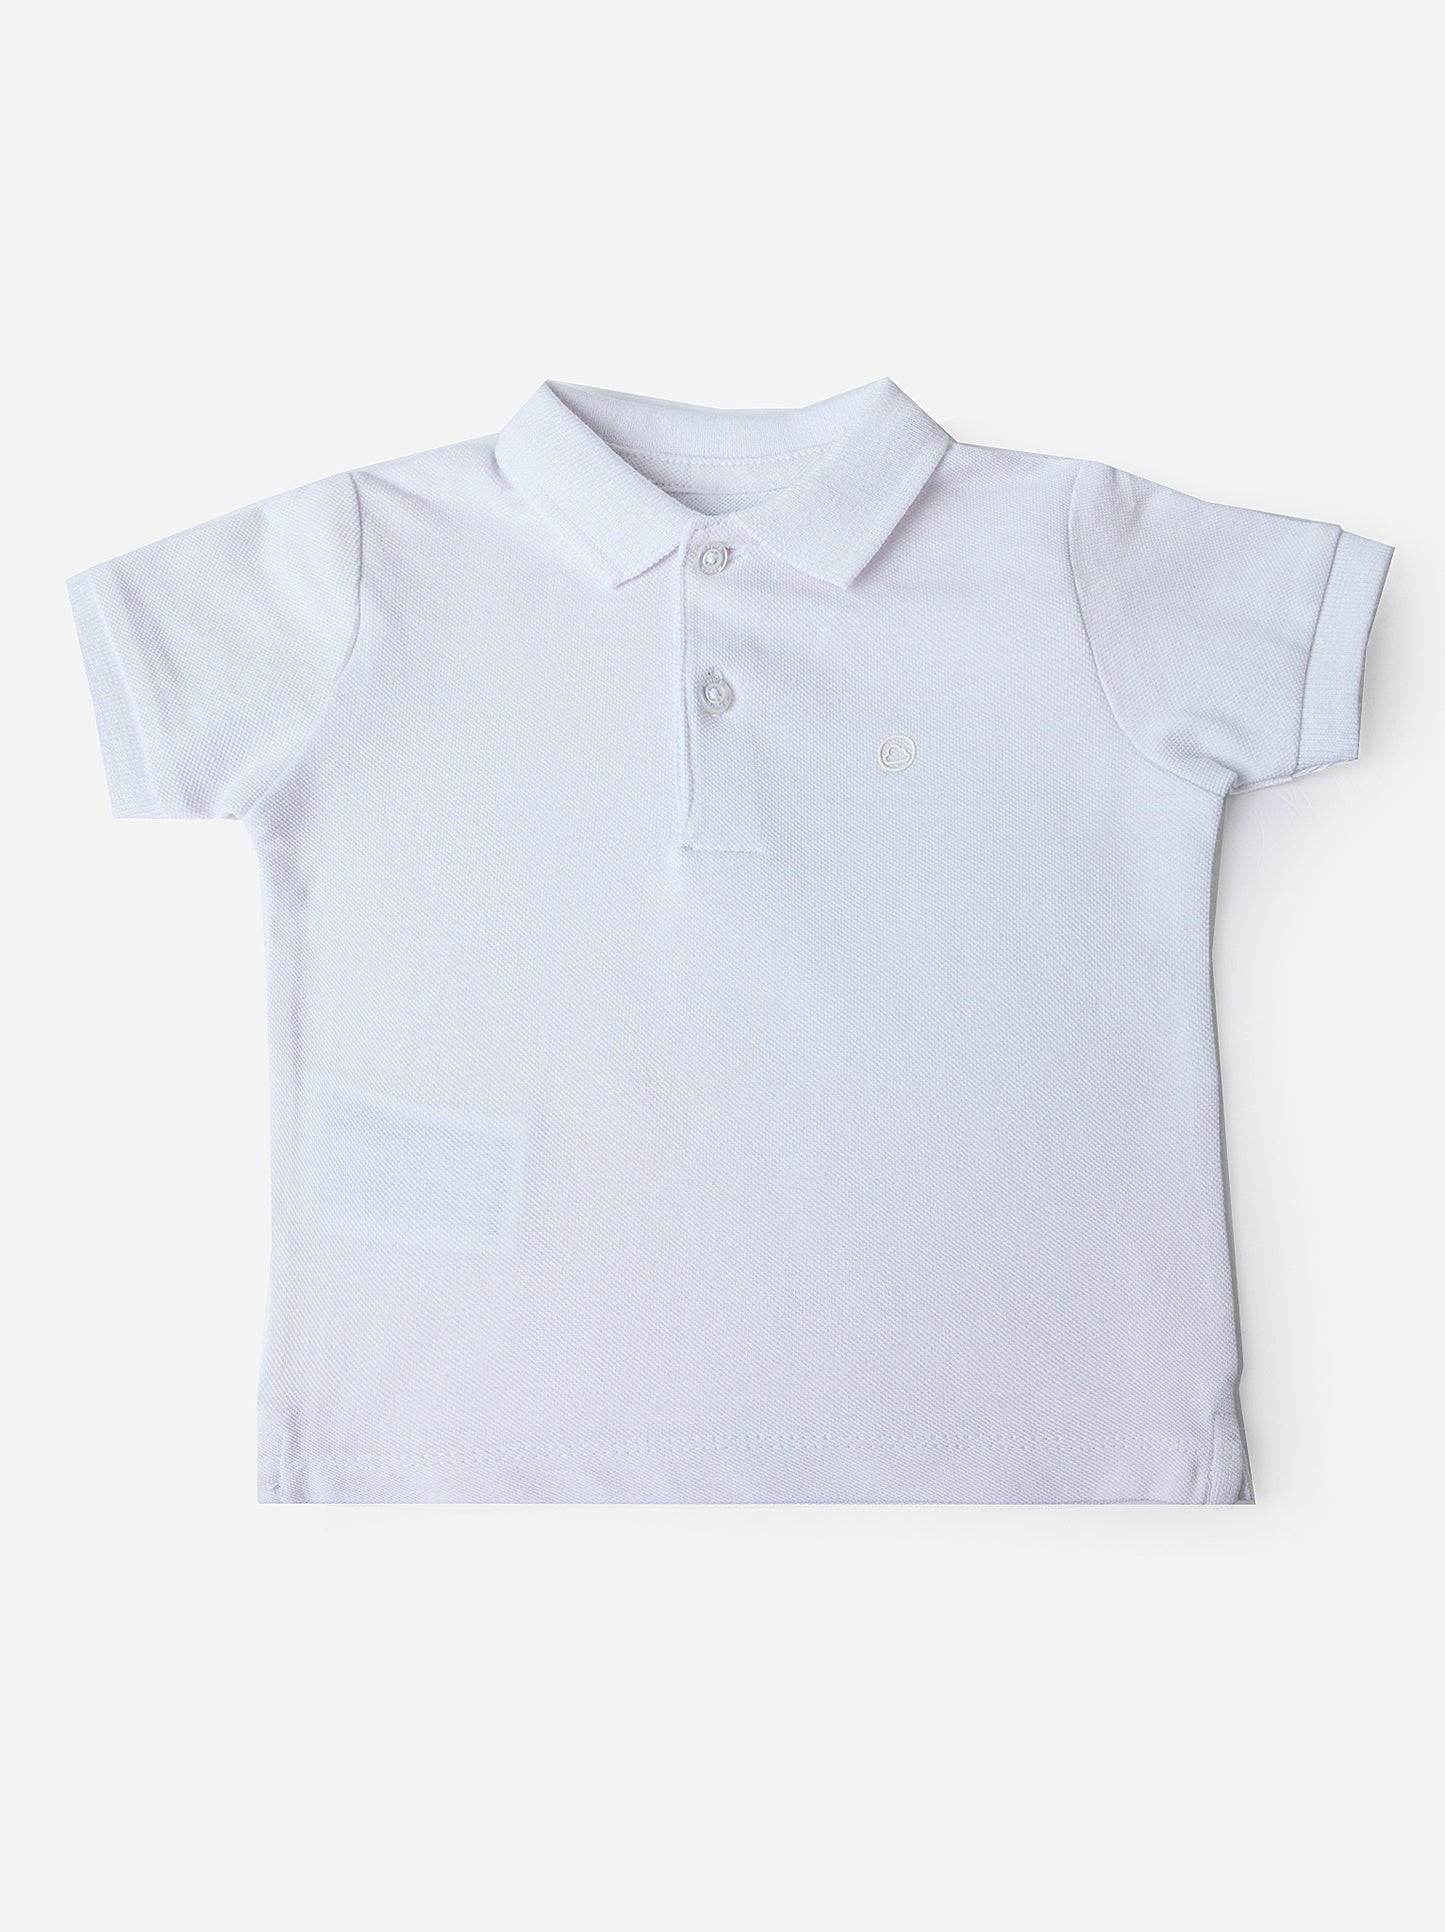 Mayoral Baby Boys' Basic Short Sleeve Polo